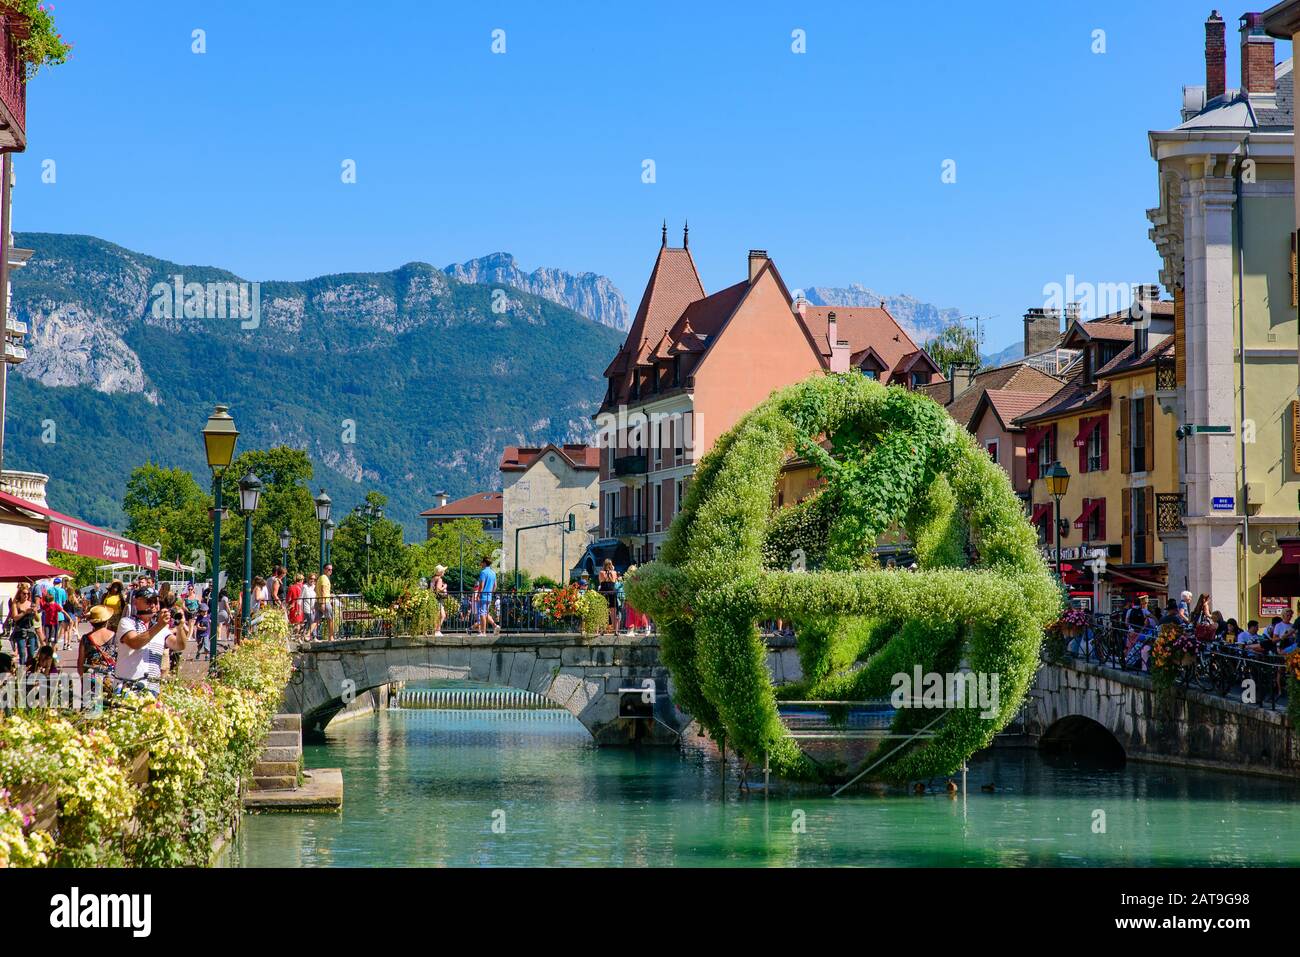 Blick auf den Fluss Thiou und die Altstadt von Annecy, der größten Stadt des französischen Departements der Region Savoie Stockfoto